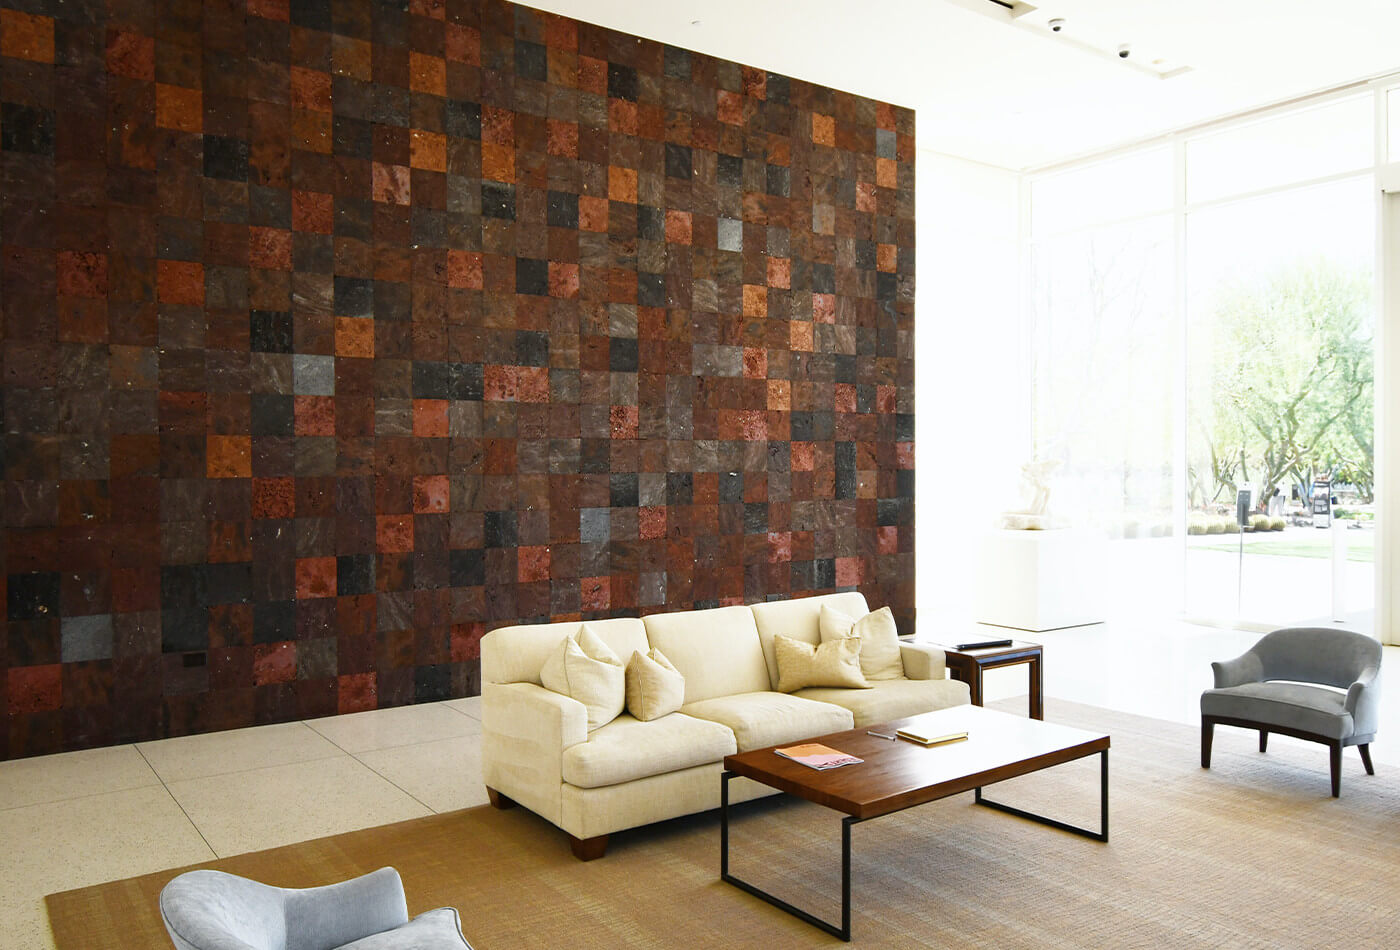 Geometric Patterns: A Classic Trend In Interior Design